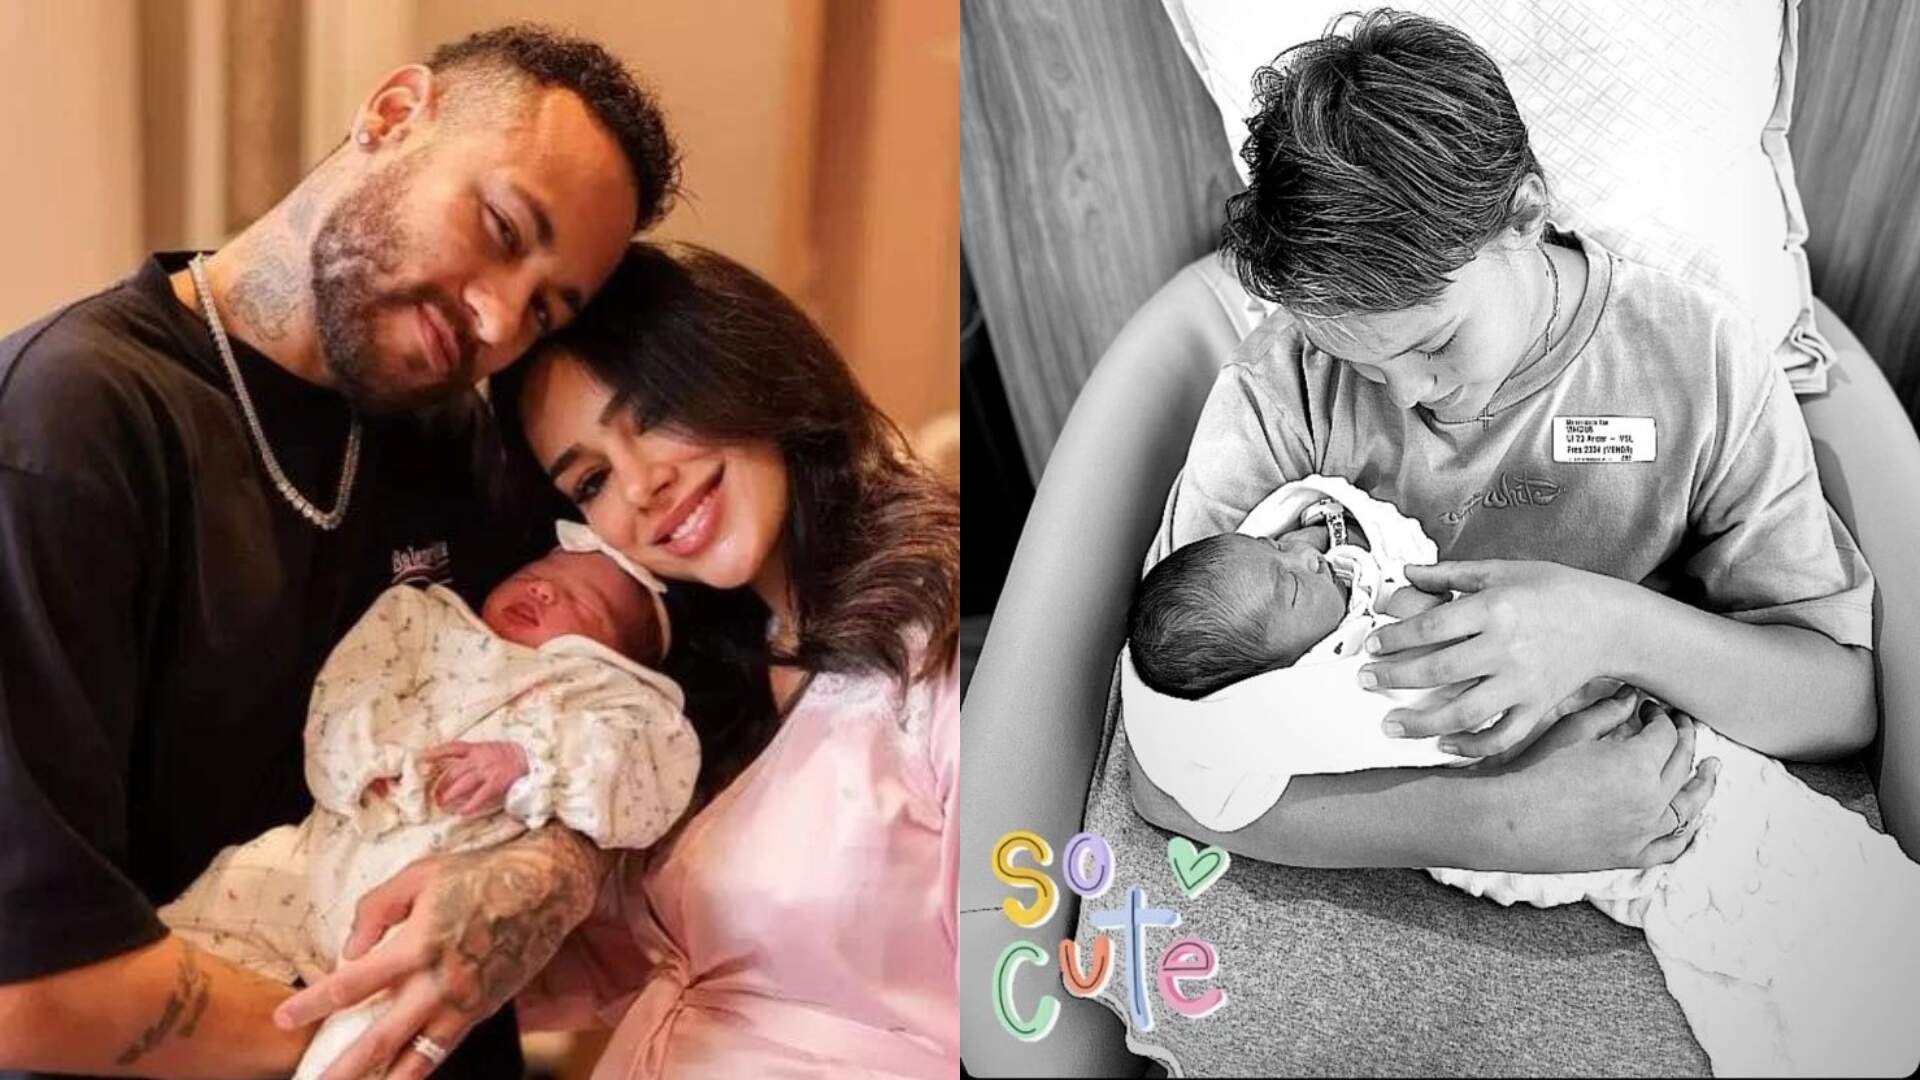 Pai babão! Neymar Jr. se derrete ao mostrar o primeiro encontro dos dois filhos: “Meus maiores amores” - Metropolitana FM